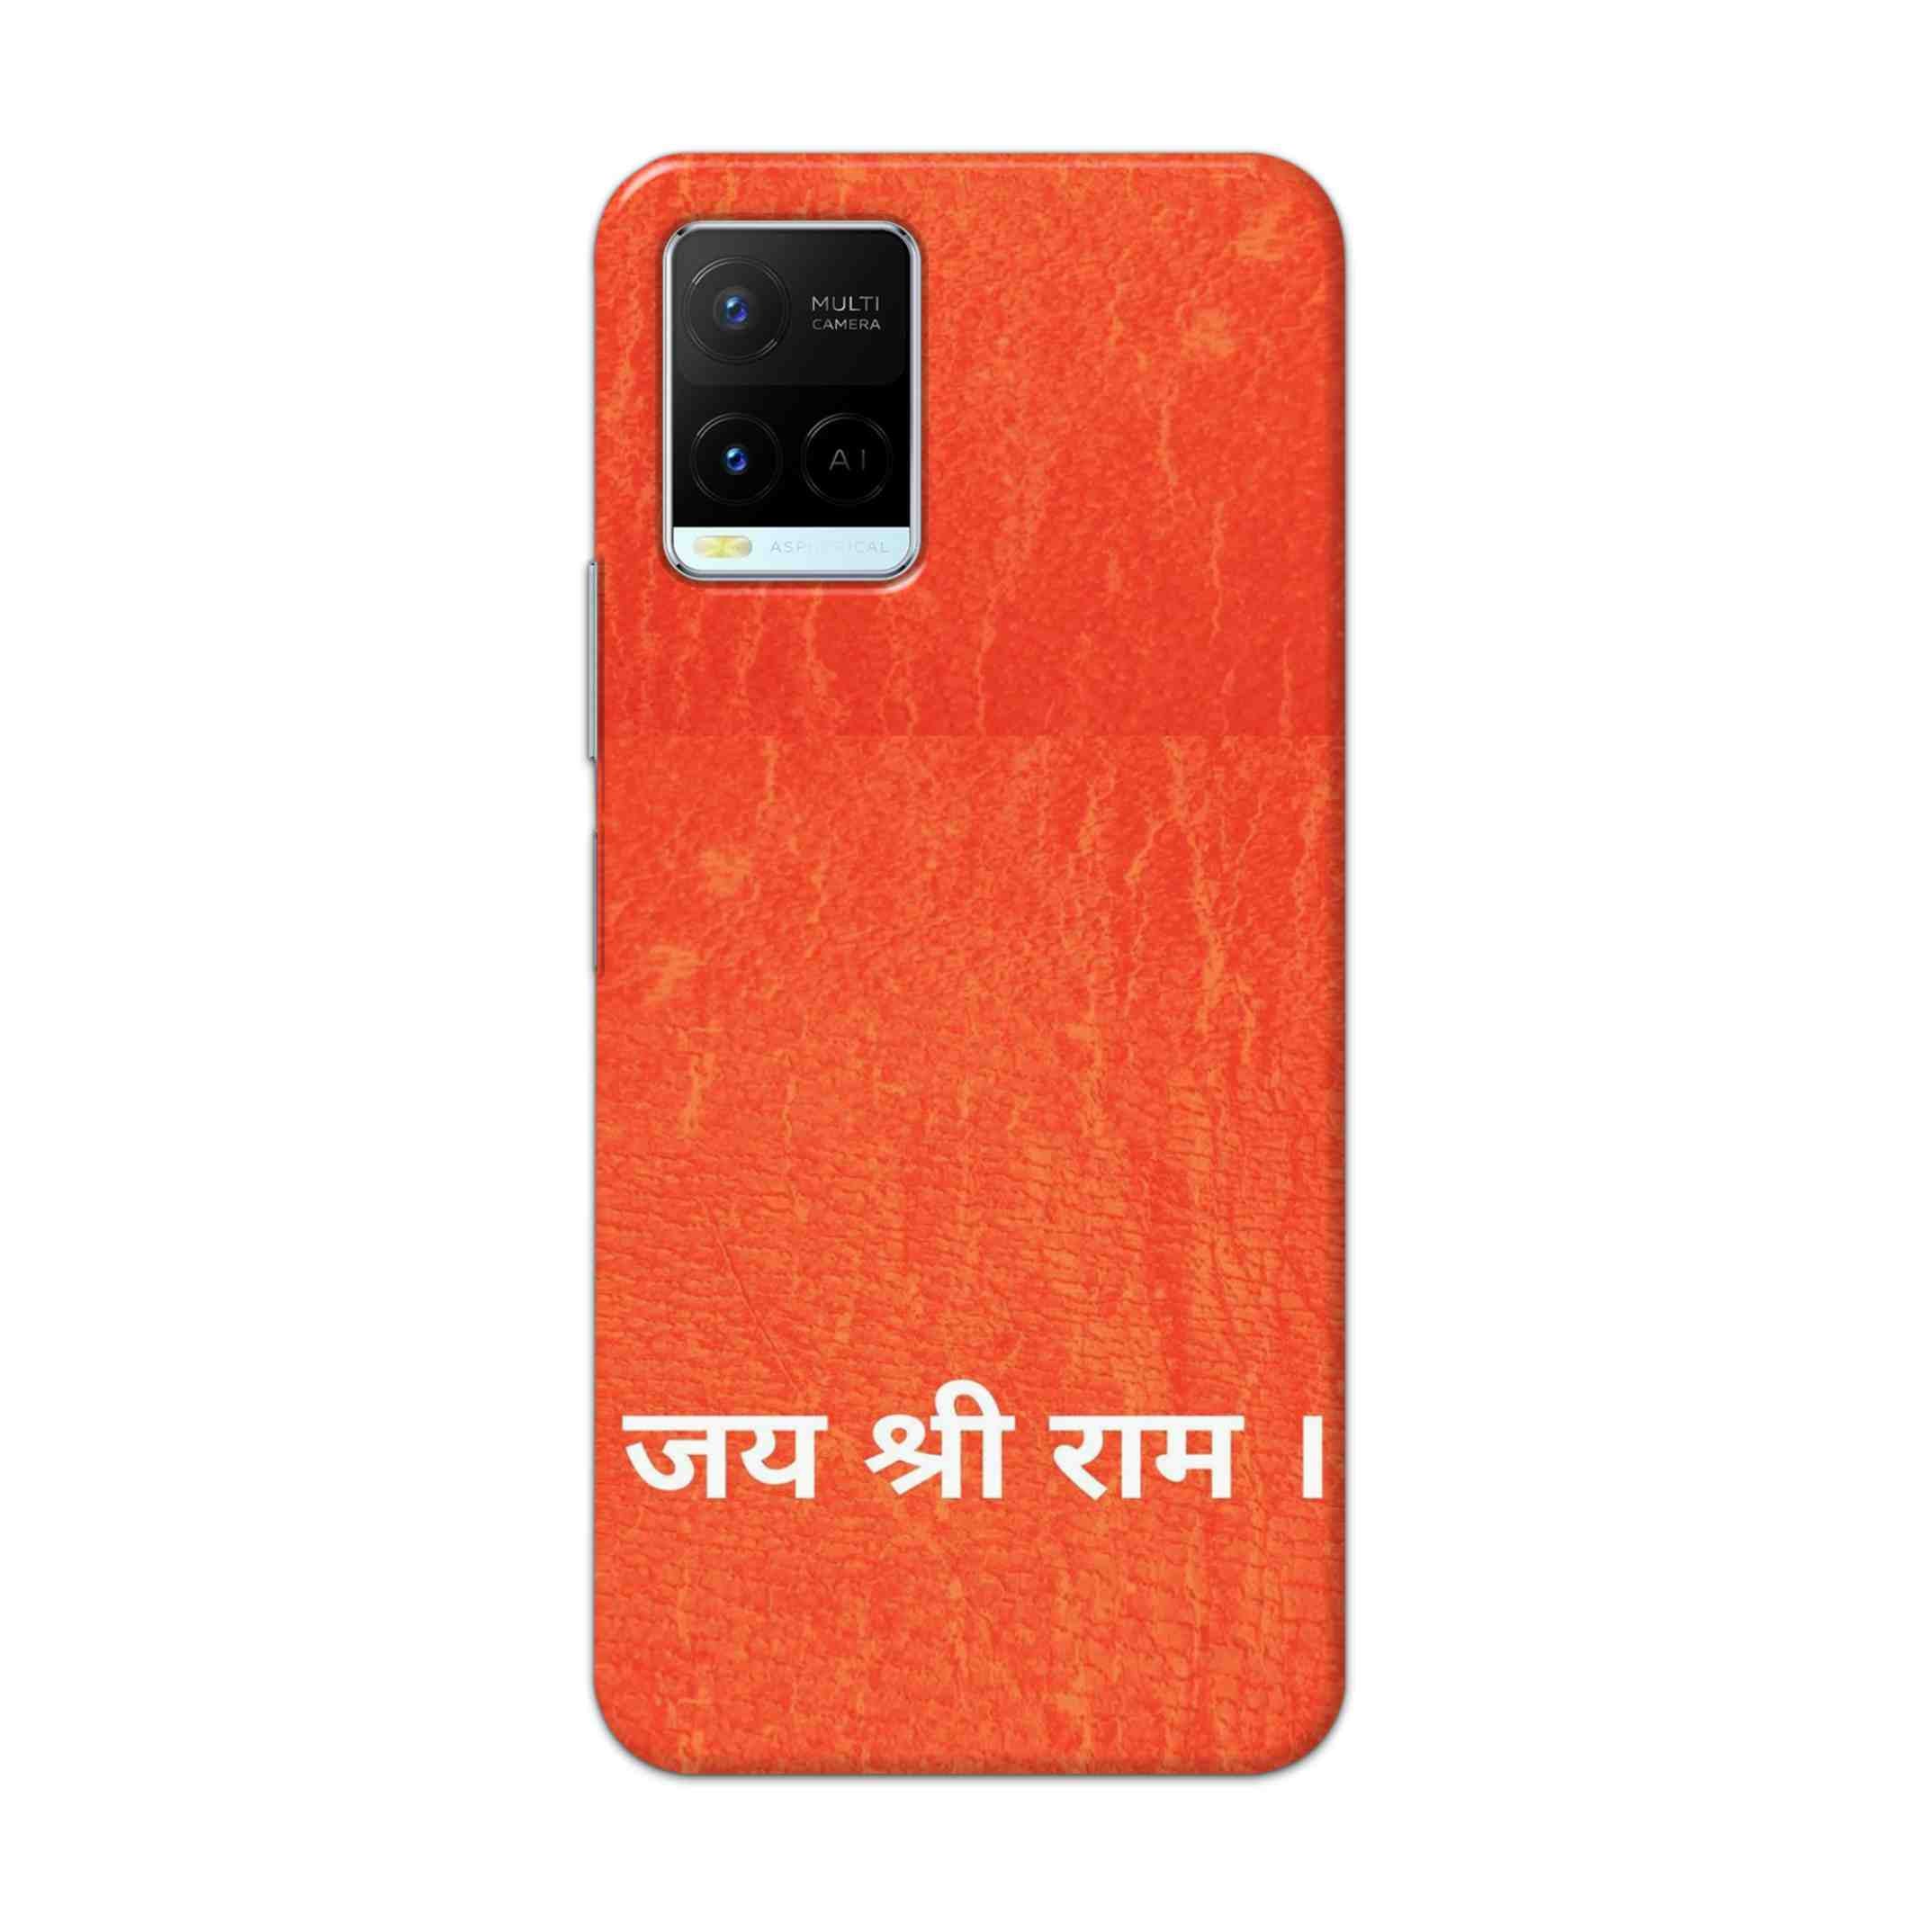 Buy Jai Shree Ram Hard Back Mobile Phone Case Cover For Vivo Y21 2021 Online